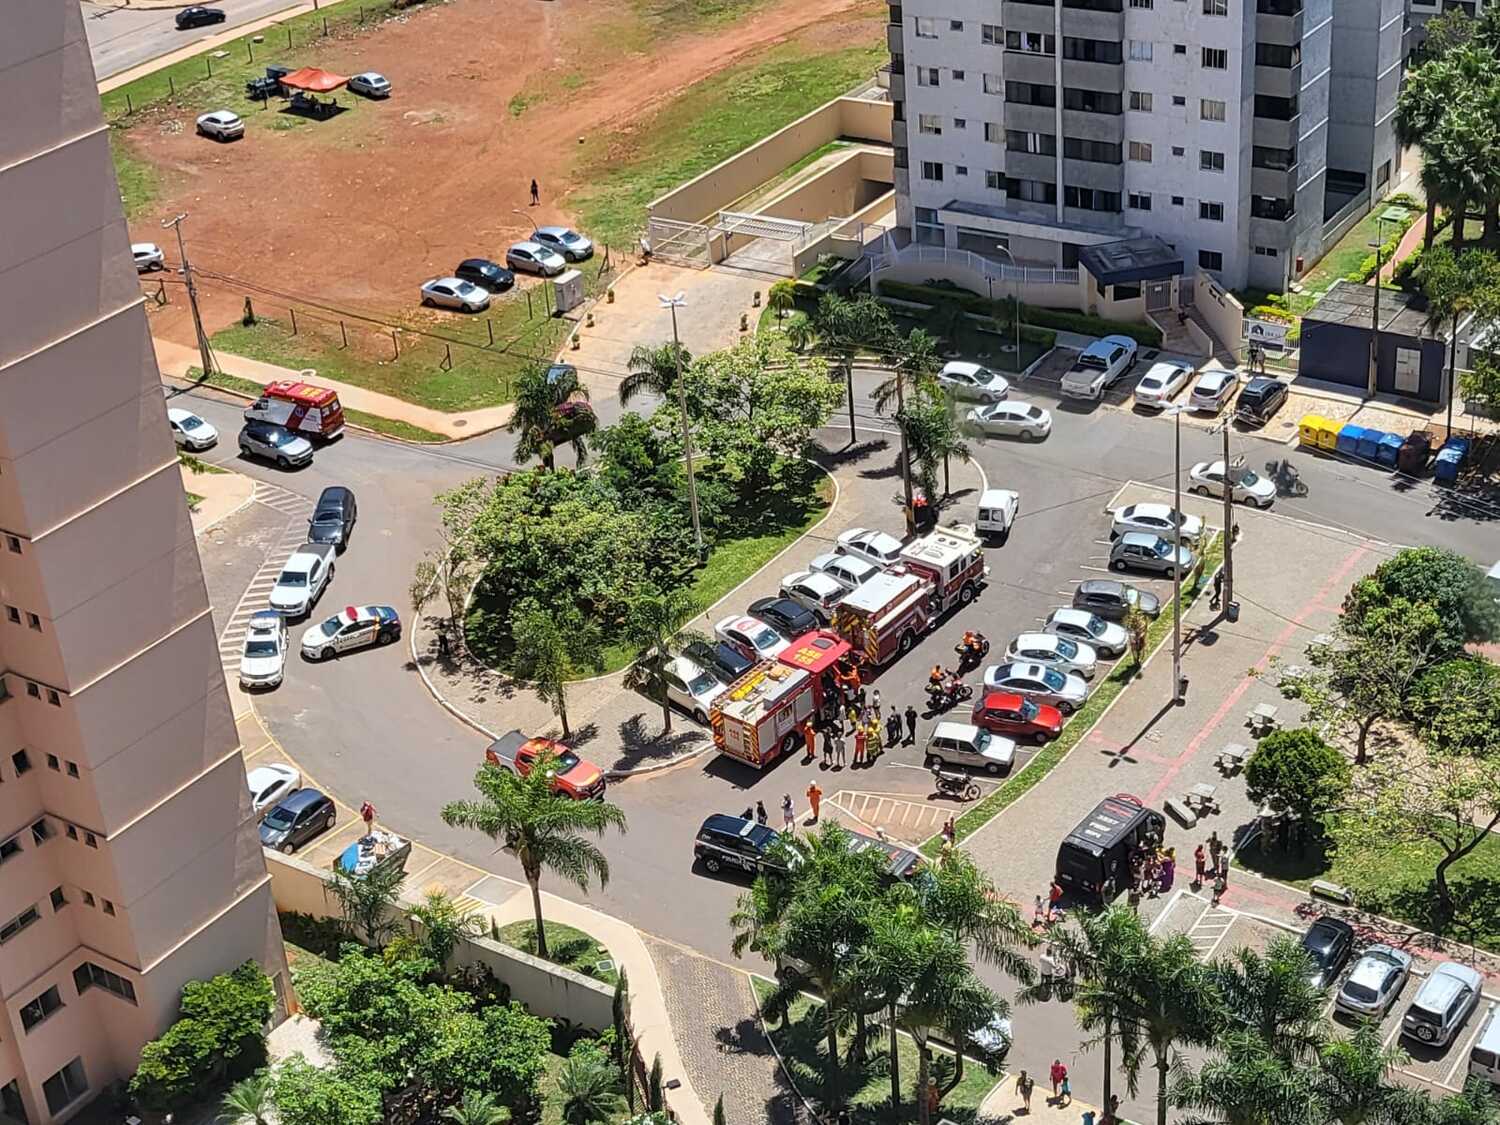 Bomba próximo ao Aeroporto de Brasília mobiliza a segurança pública